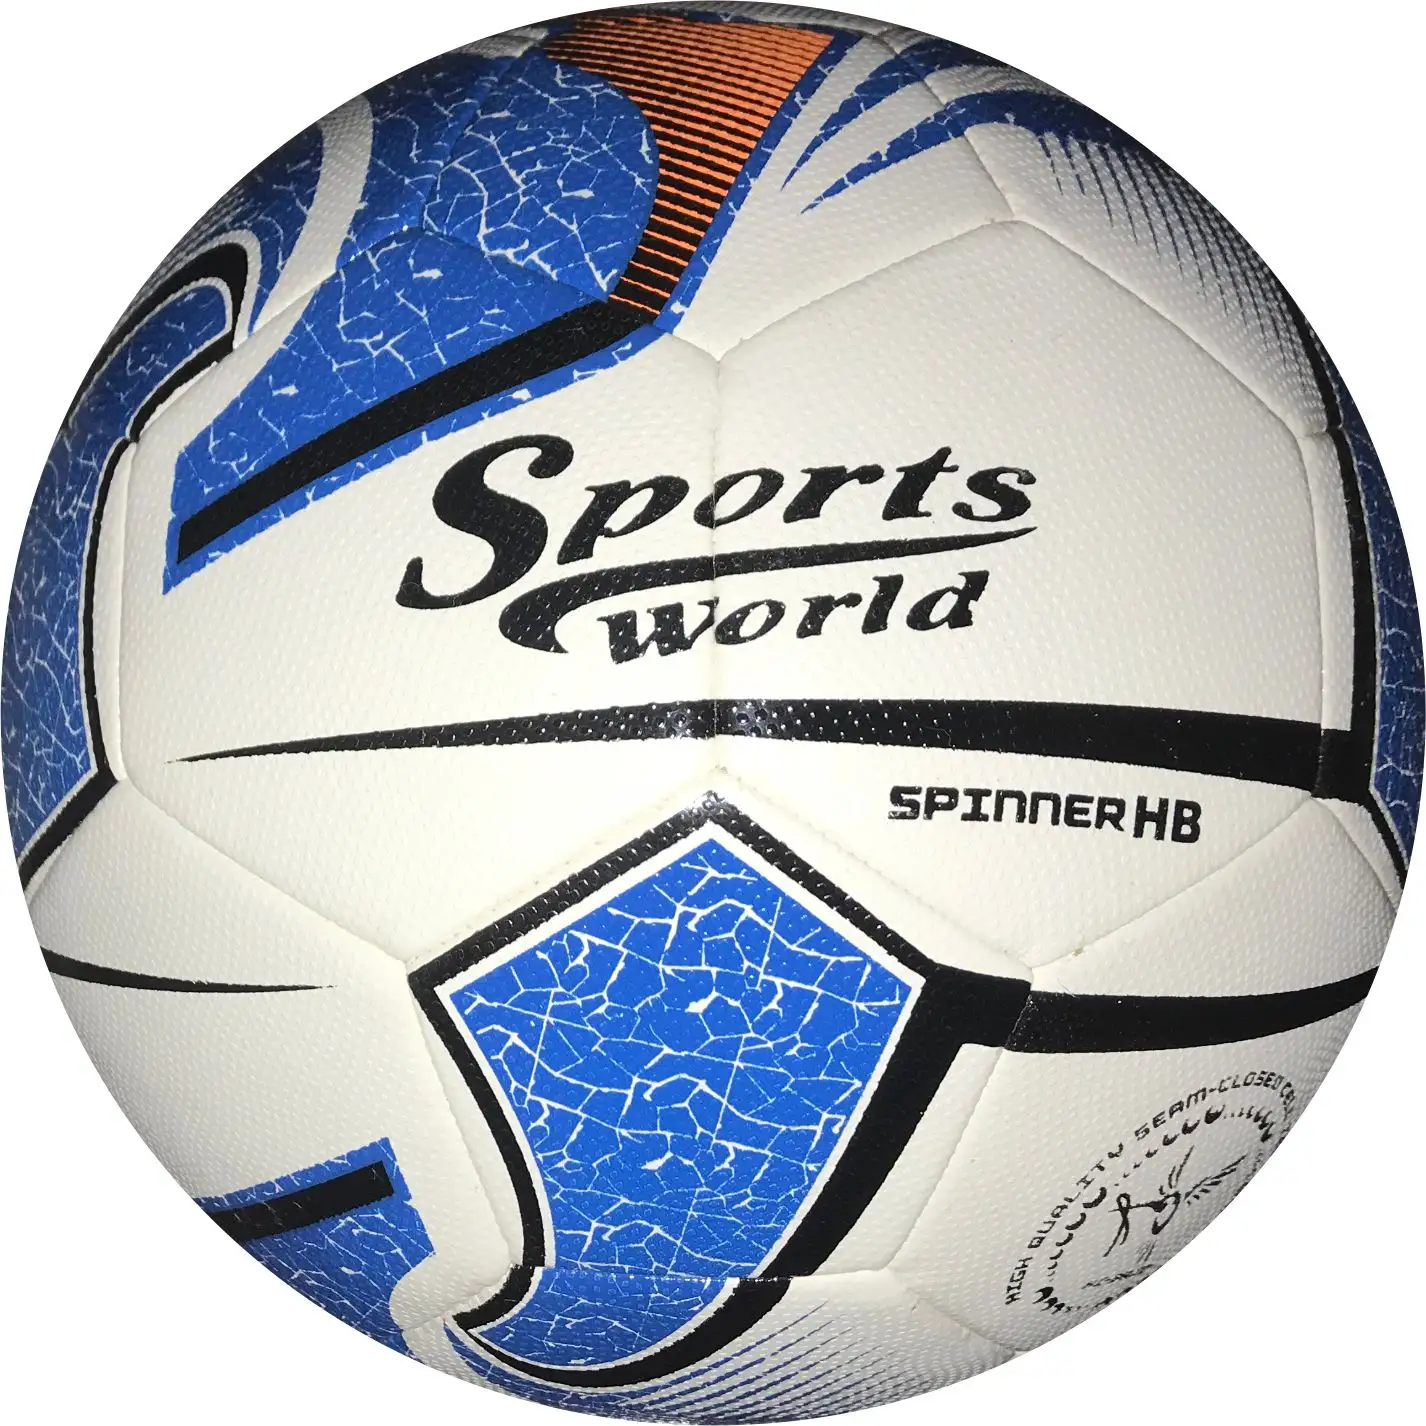 Soccerball, футбол, teamsupport, teamsport, футбол, футбольный футбол, balon, профессиональное развлечение, цель отдыха